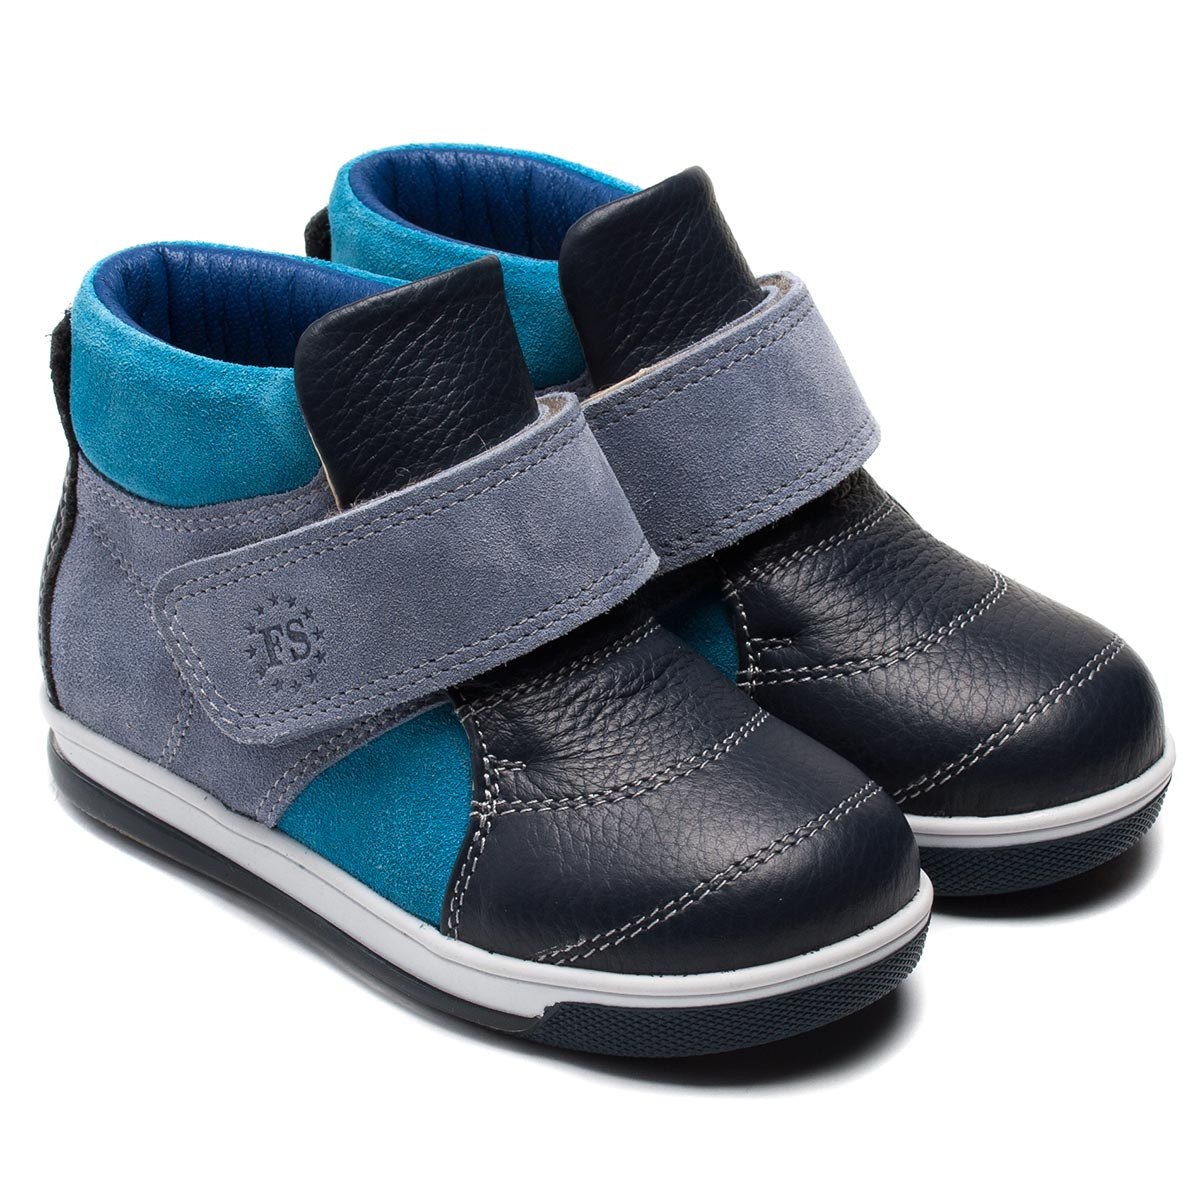 Мир обуви для мальчиков. 387221 Ботинки для мальчиков. KNK Urban обувь детская. Весенняя обувь для мальчиков.